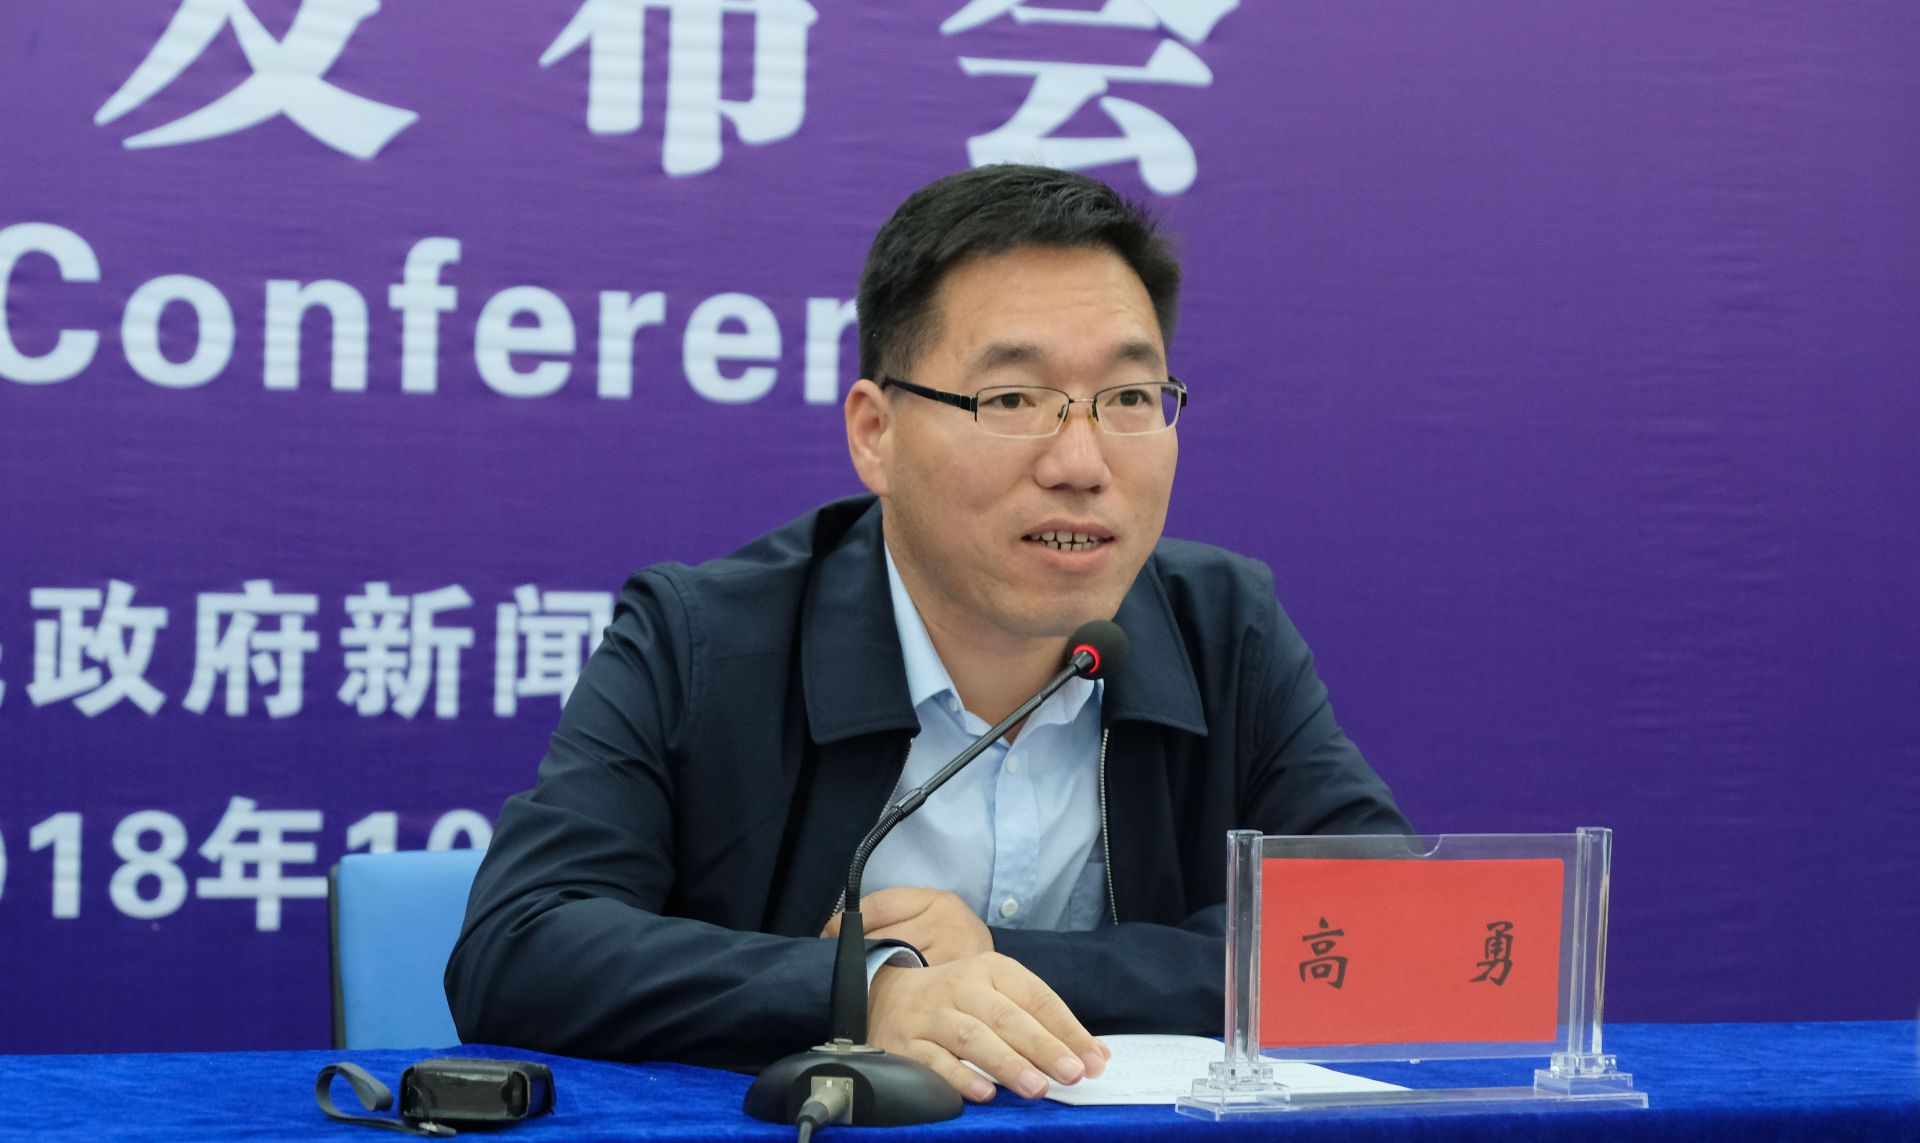 发布会上,房县县委常委,宣传部部长高勇介绍了中国扶贫日·湖北旅游